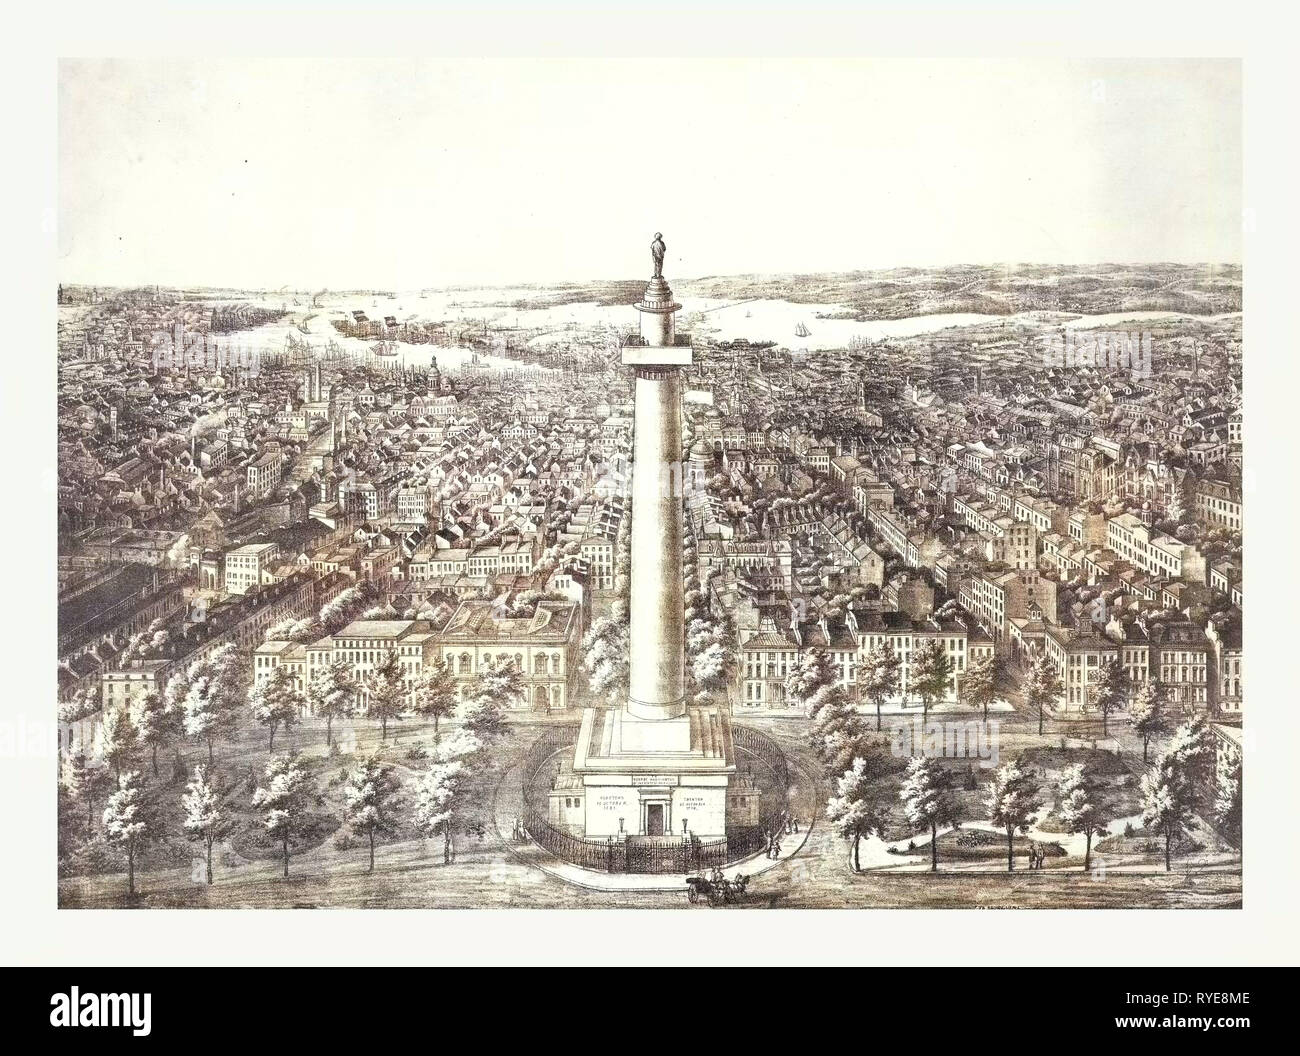 La ville de ville de Baltimore, au Maryland en 1880 Vue du Washington Monument à A. Sud Sachse & Co. lithographes, US, USA, Amérique Latine Banque D'Images